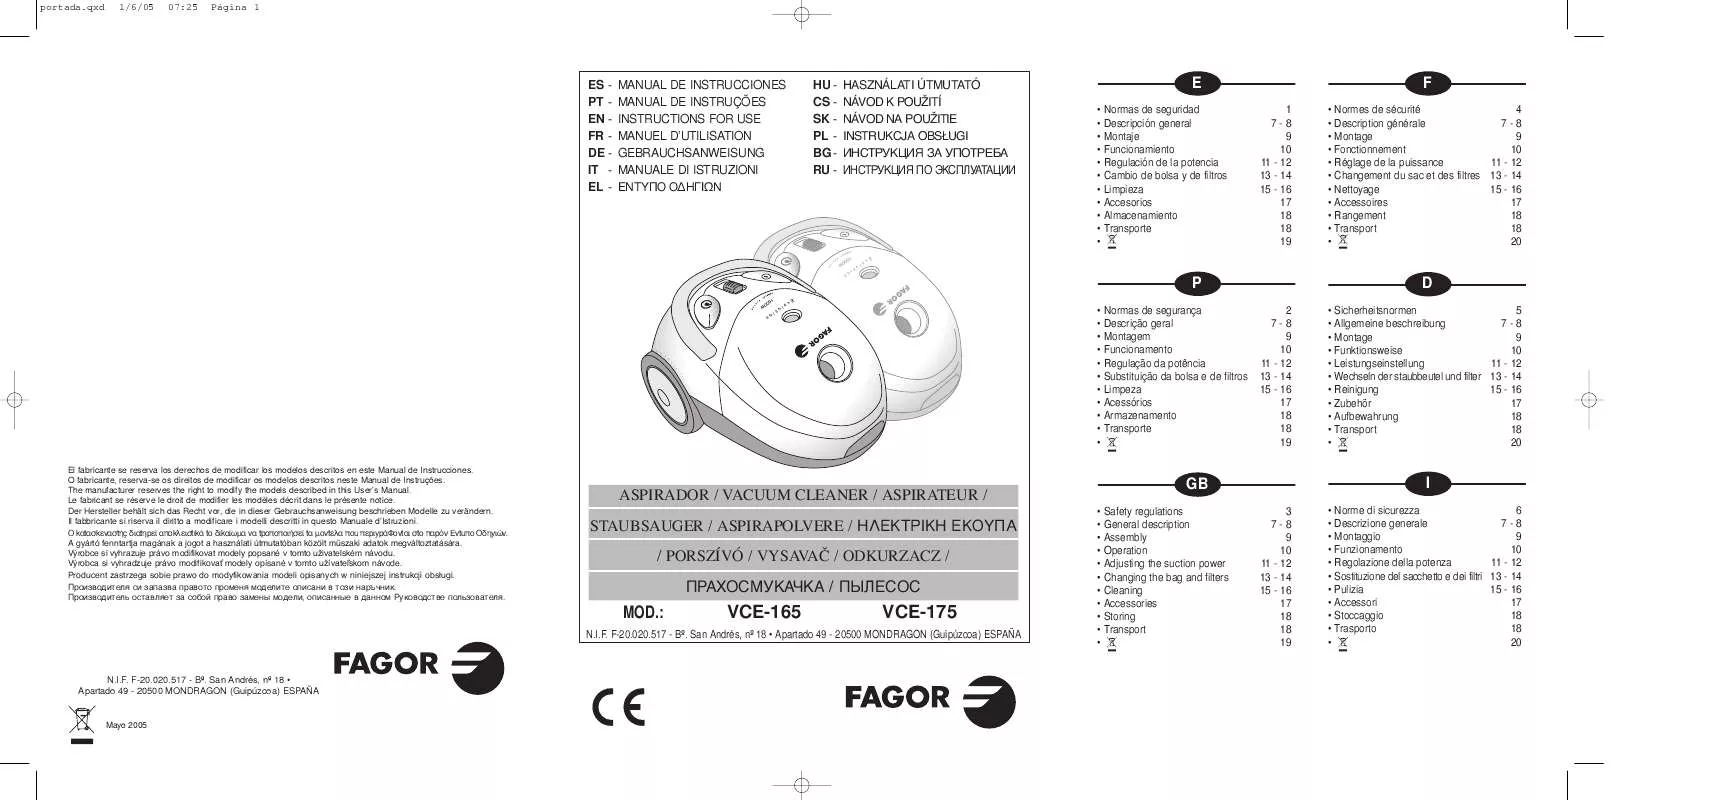 Mode d'emploi FAGOR VCE -175